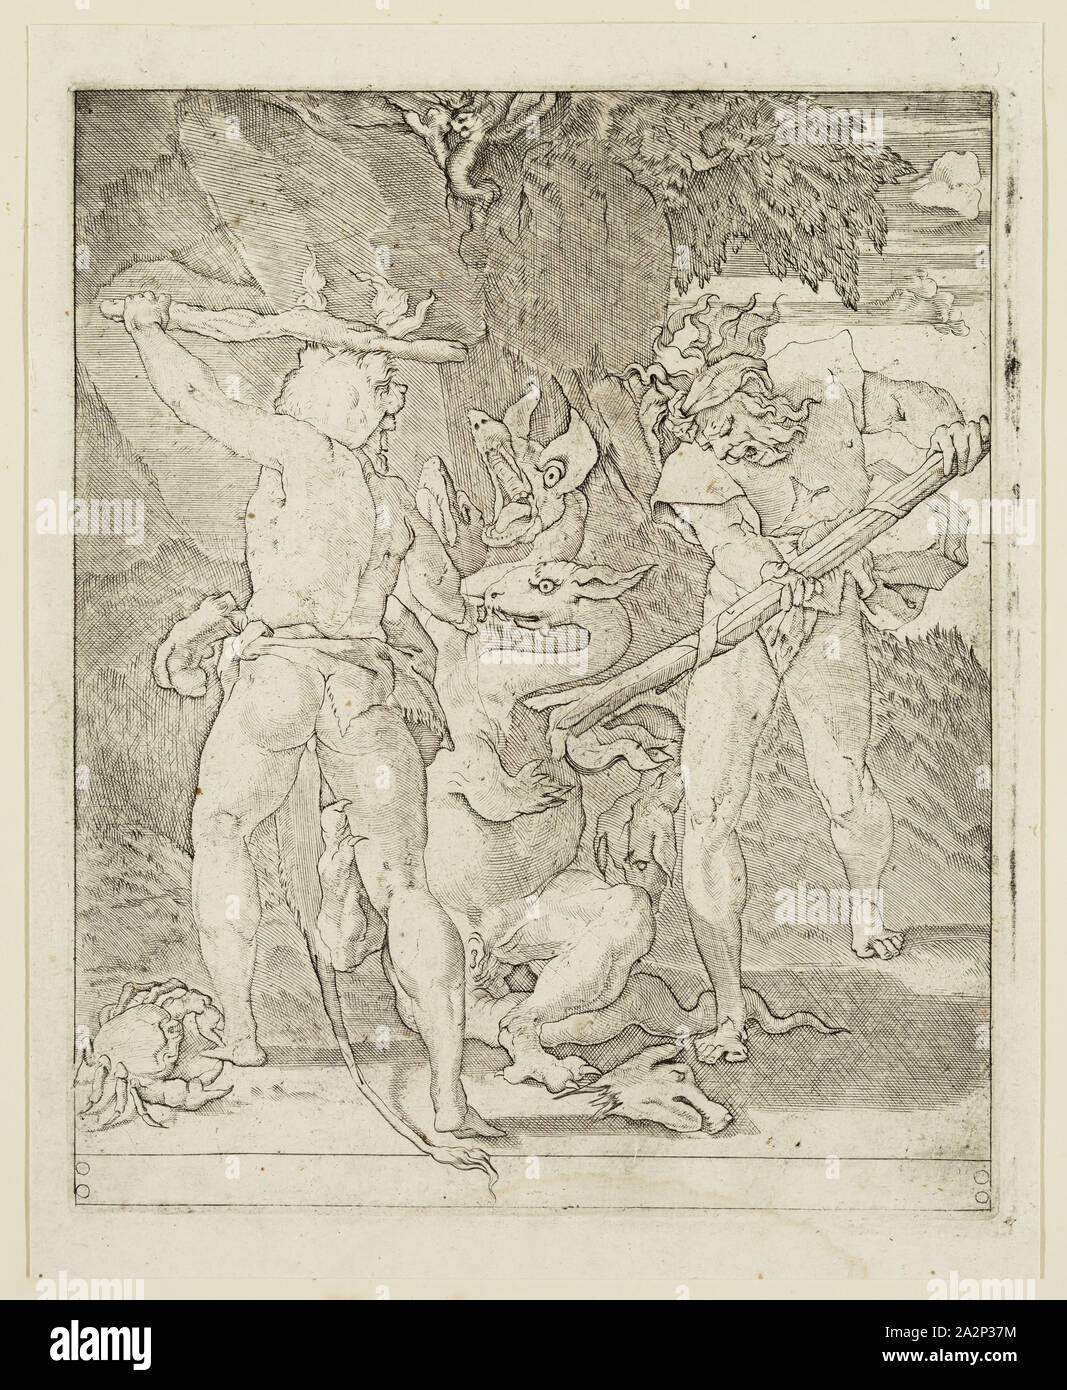 Gian Jacopo Caraglio, italien, 1500-1570, Hercule tuant l'Hydre de Lerne, entre 1500 et 1570, gravure imprimée dans l'encre noire sur papier vergé, plaque : 8 5/8 × 7 1/8 pouces (21,9 × 18,1 cm Banque D'Images